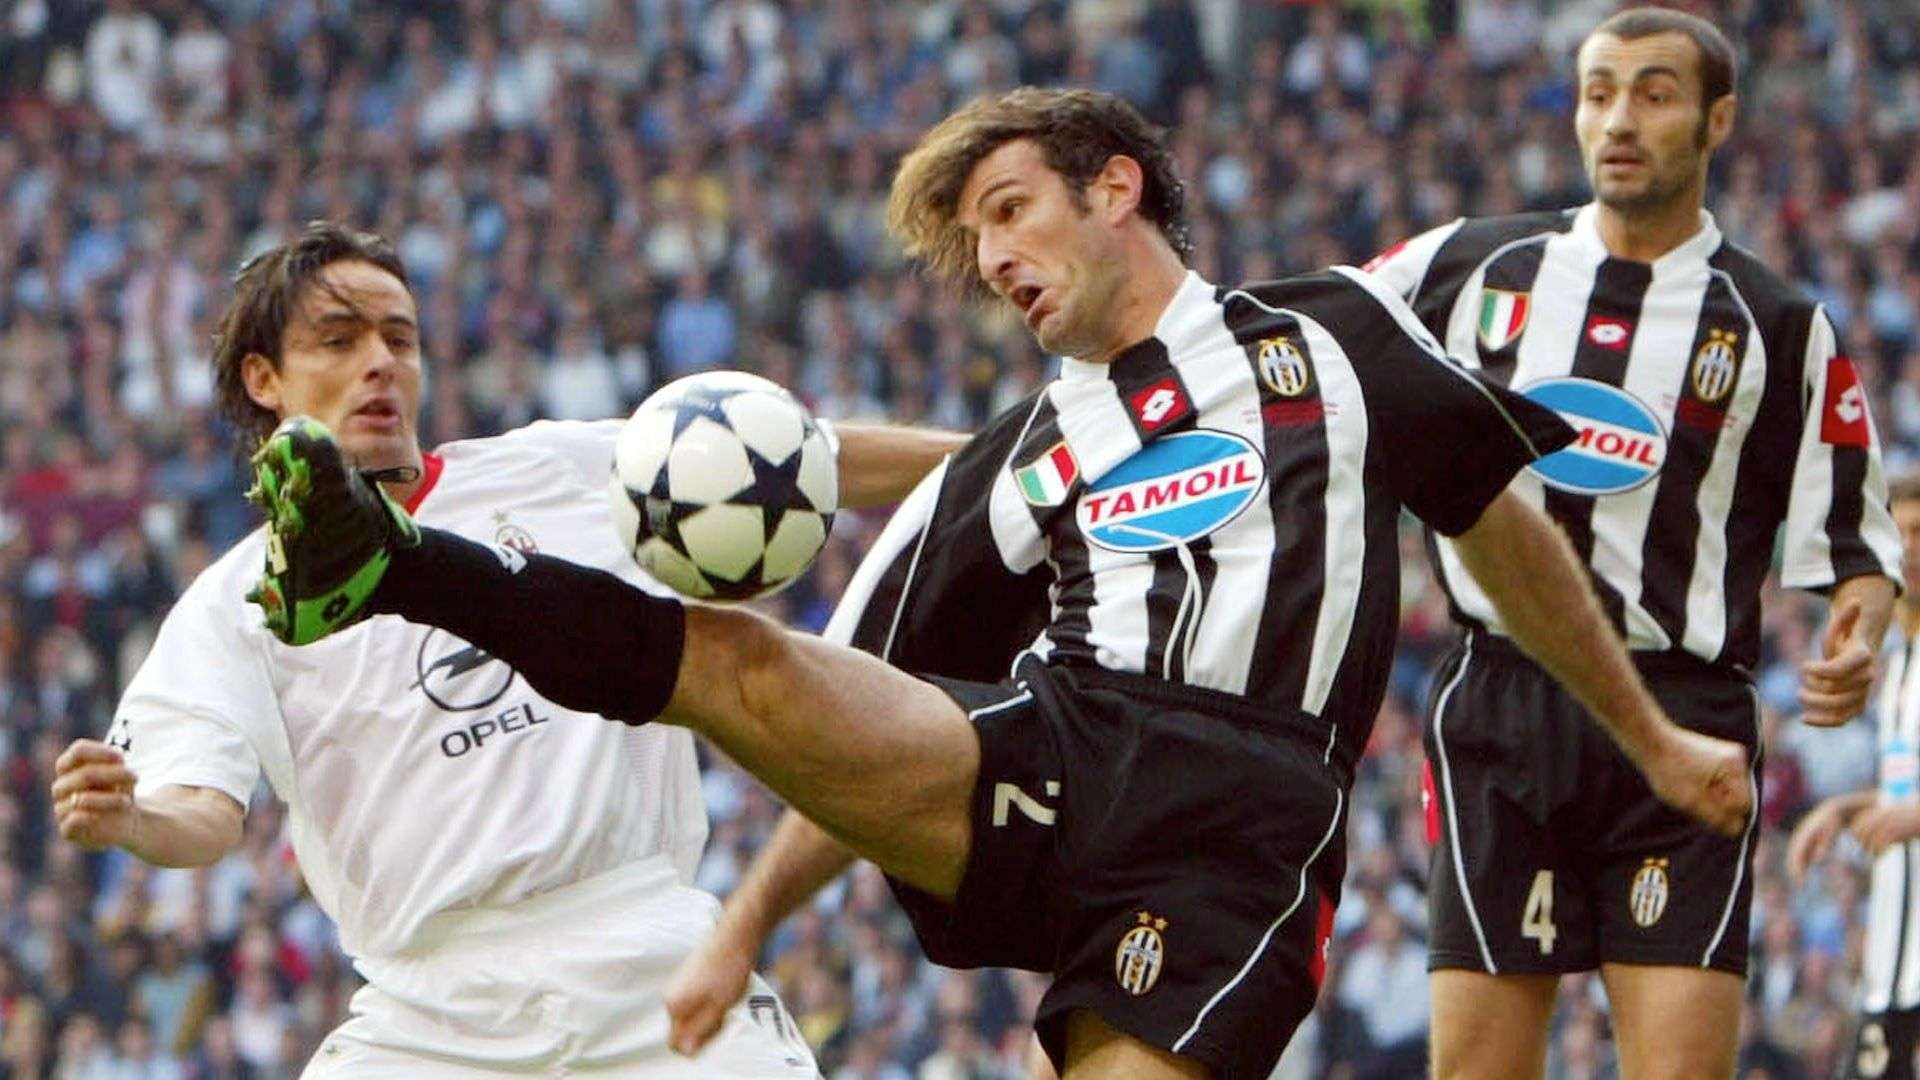 Inzaghi Ferrara AC Milan Juventus 2003